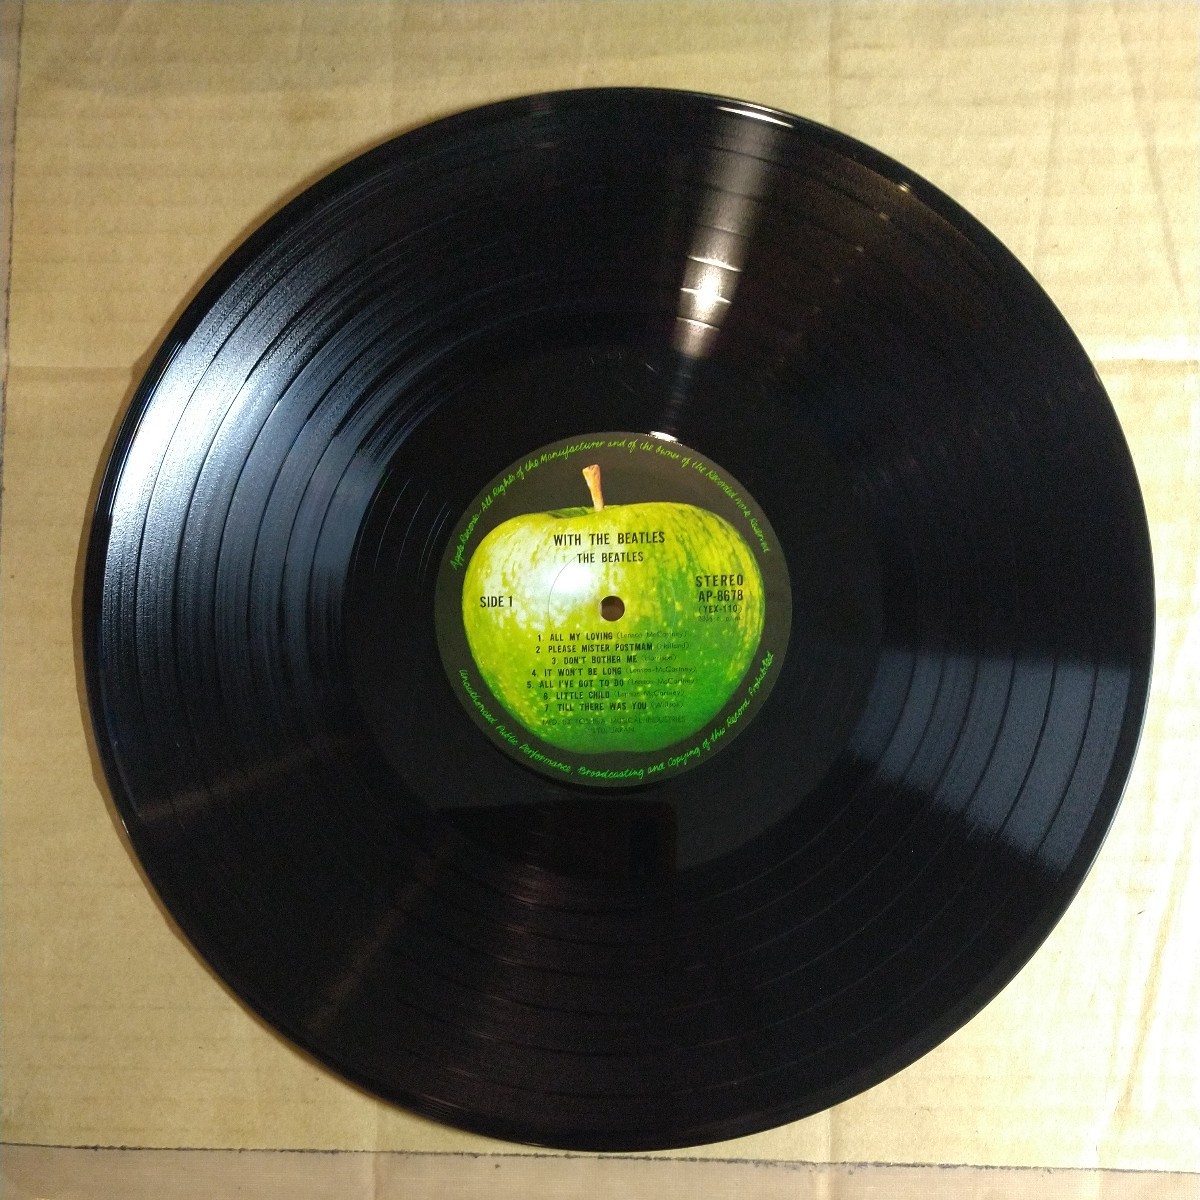 ビートルズ「with the beatles」邦LP 1969年 東芝音工 ペラジャケ★★ 英国版2nd albumの日本版の画像7